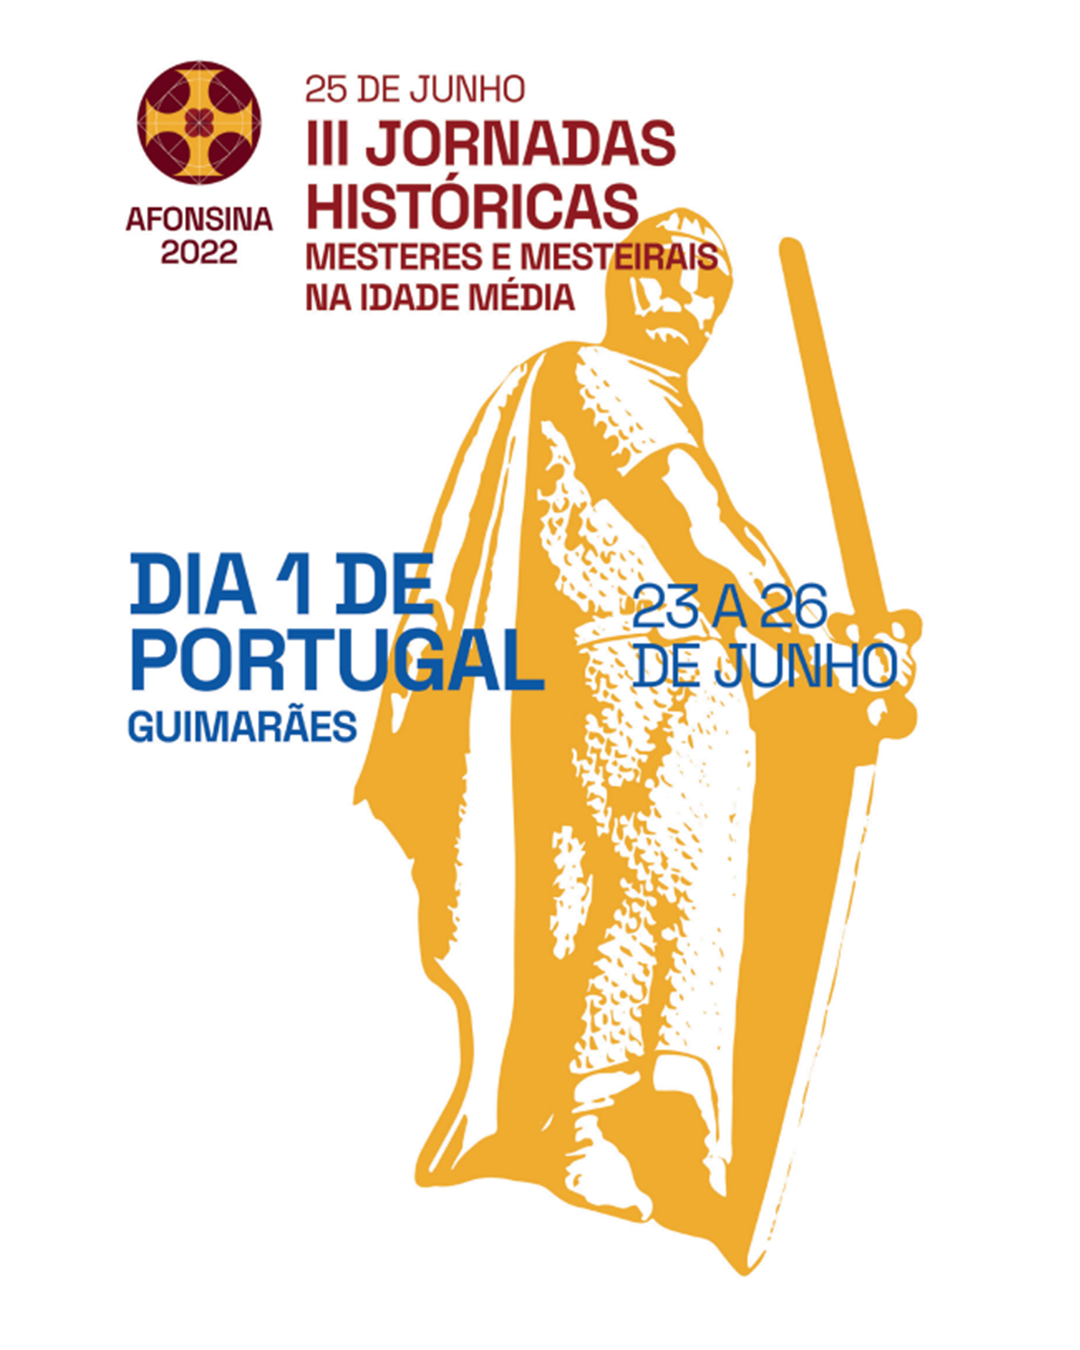 III Jornadas Históricas de Guimarães "Mesteres e Mesteirais na Idade Média" image